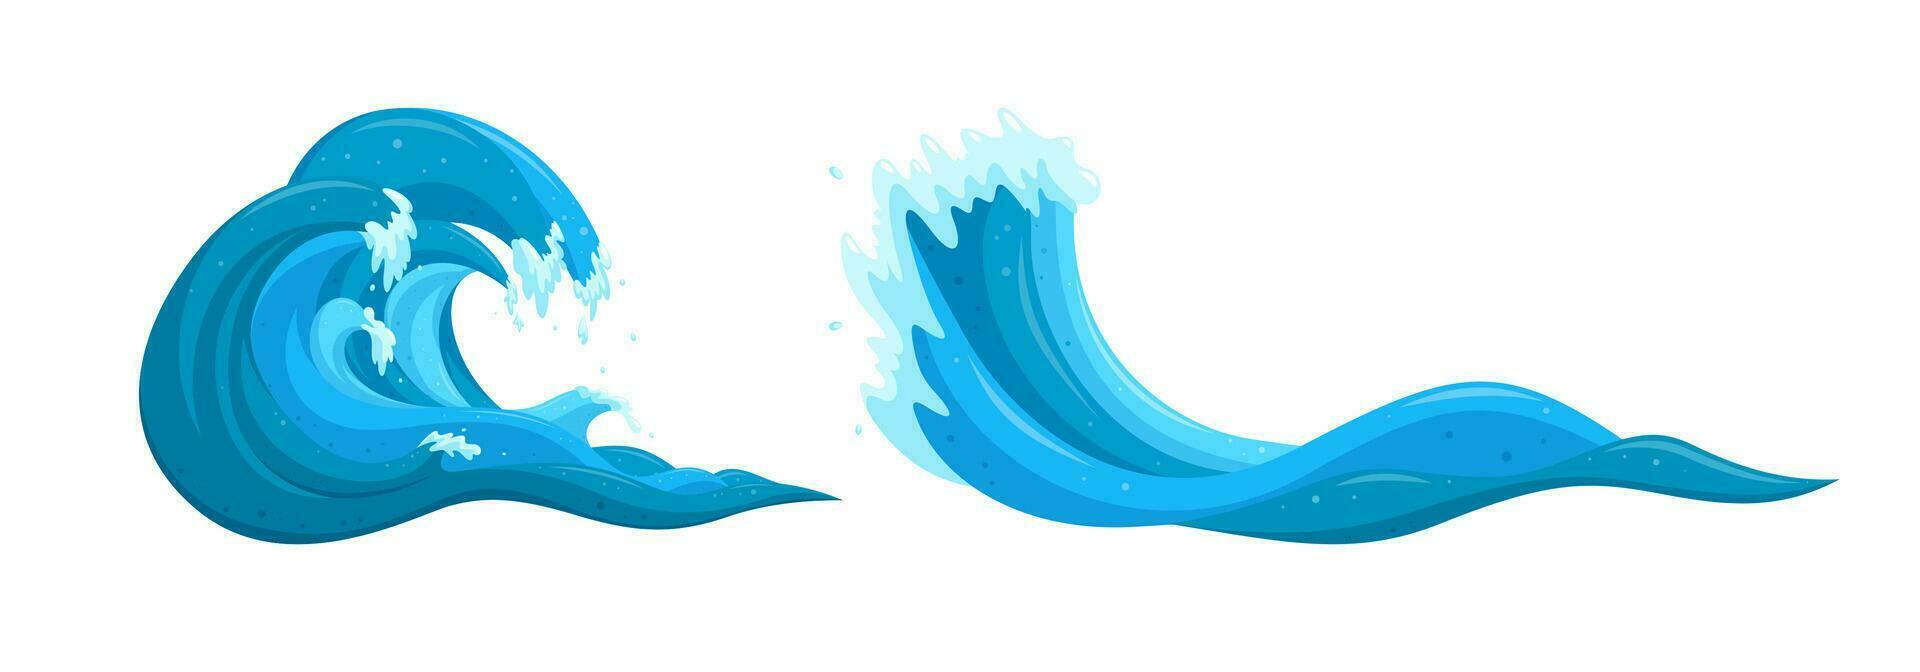 flohen Wasser Elemente. Ozean Tsunami Wellen Satz. Karikatur Vektor Abbildungen